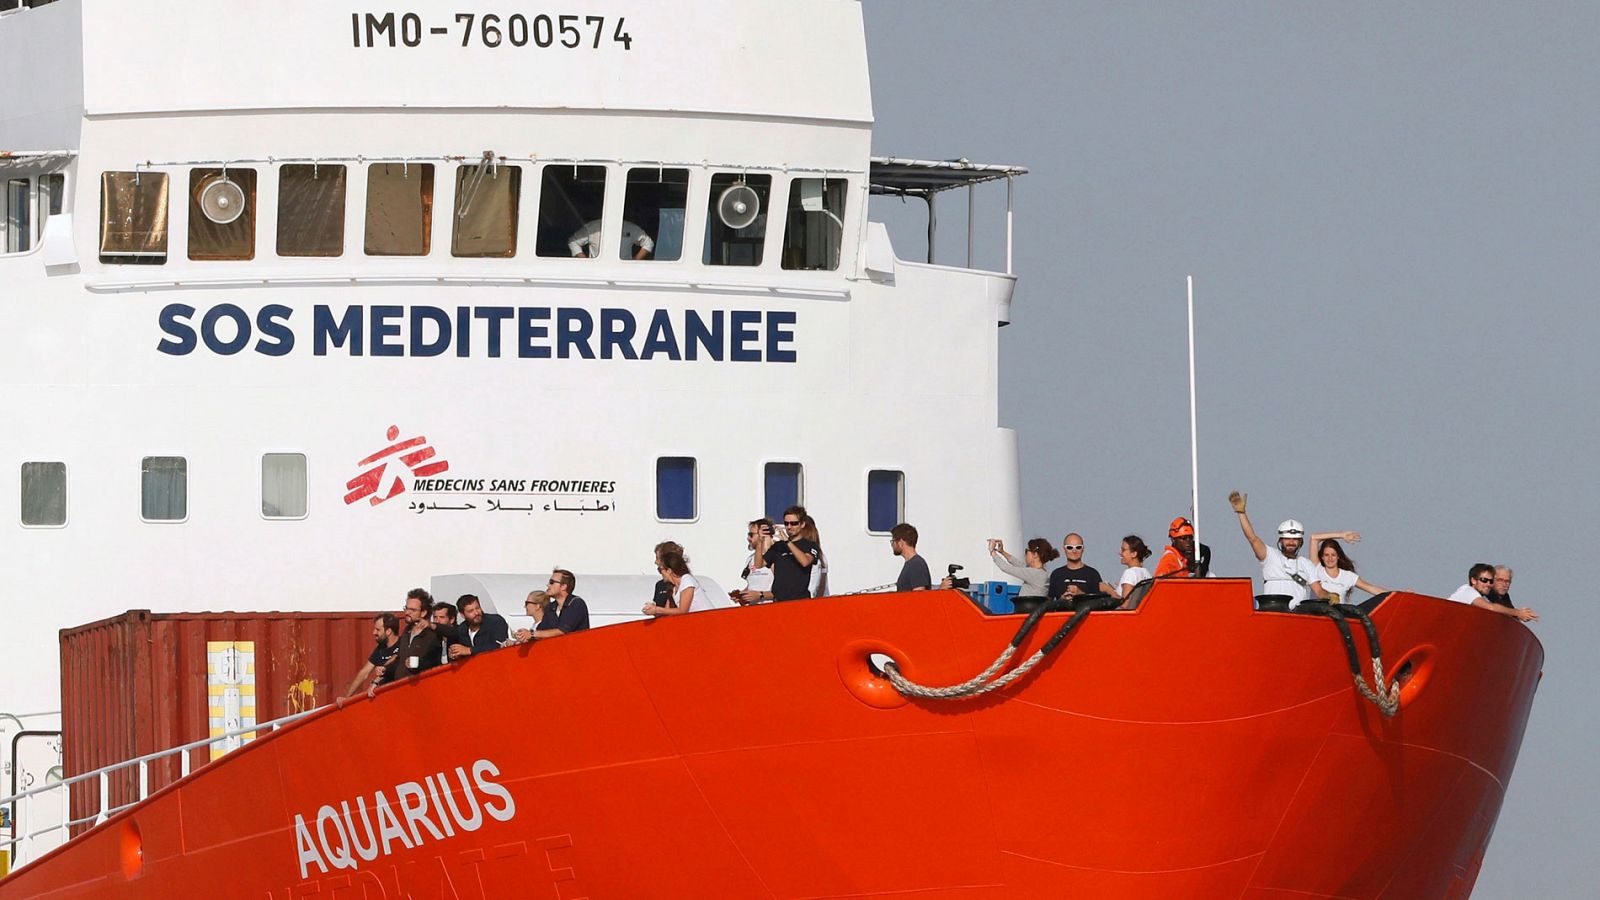 El Aquarius pone fin al rescate de migrantes por las "múltiples presiones políticas" - RTVE.es